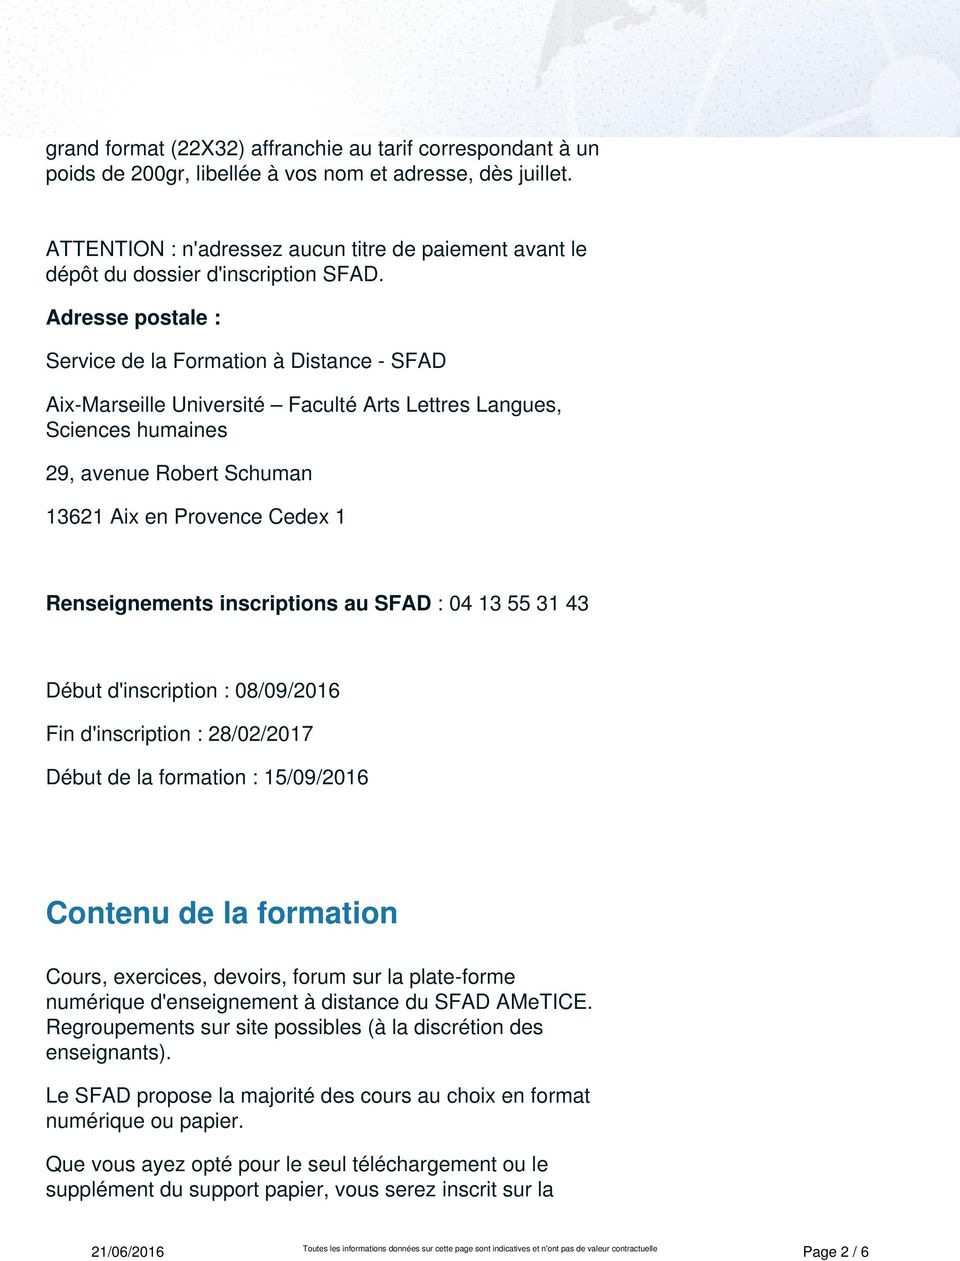 Adresse postale : Service de la Formation à Distance - SFAD Aix-Marseille Université Faculté Arts Lettres Langues, Sciences humaines 29, avenue Robert Schuman 13621 Aix en Provence Cedex 1